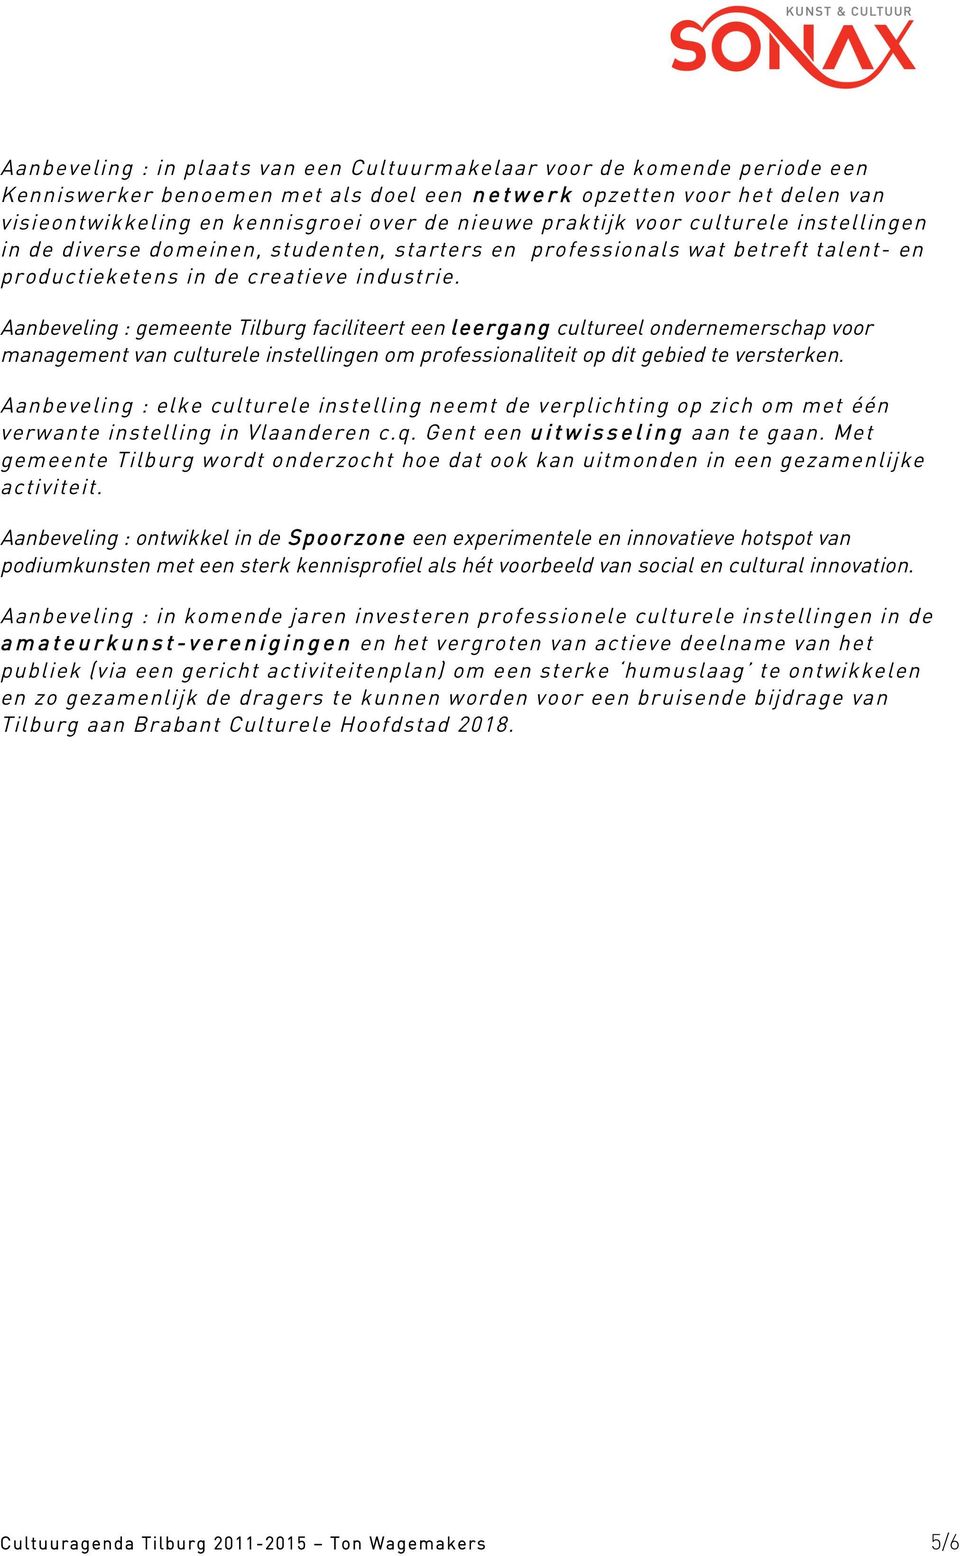 Aanbeveling : gemeente Tilburg faciliteert een leergang cultureel ondernemerschap voor management van culturele instellingen om professionaliteit op dit gebied te versterken.